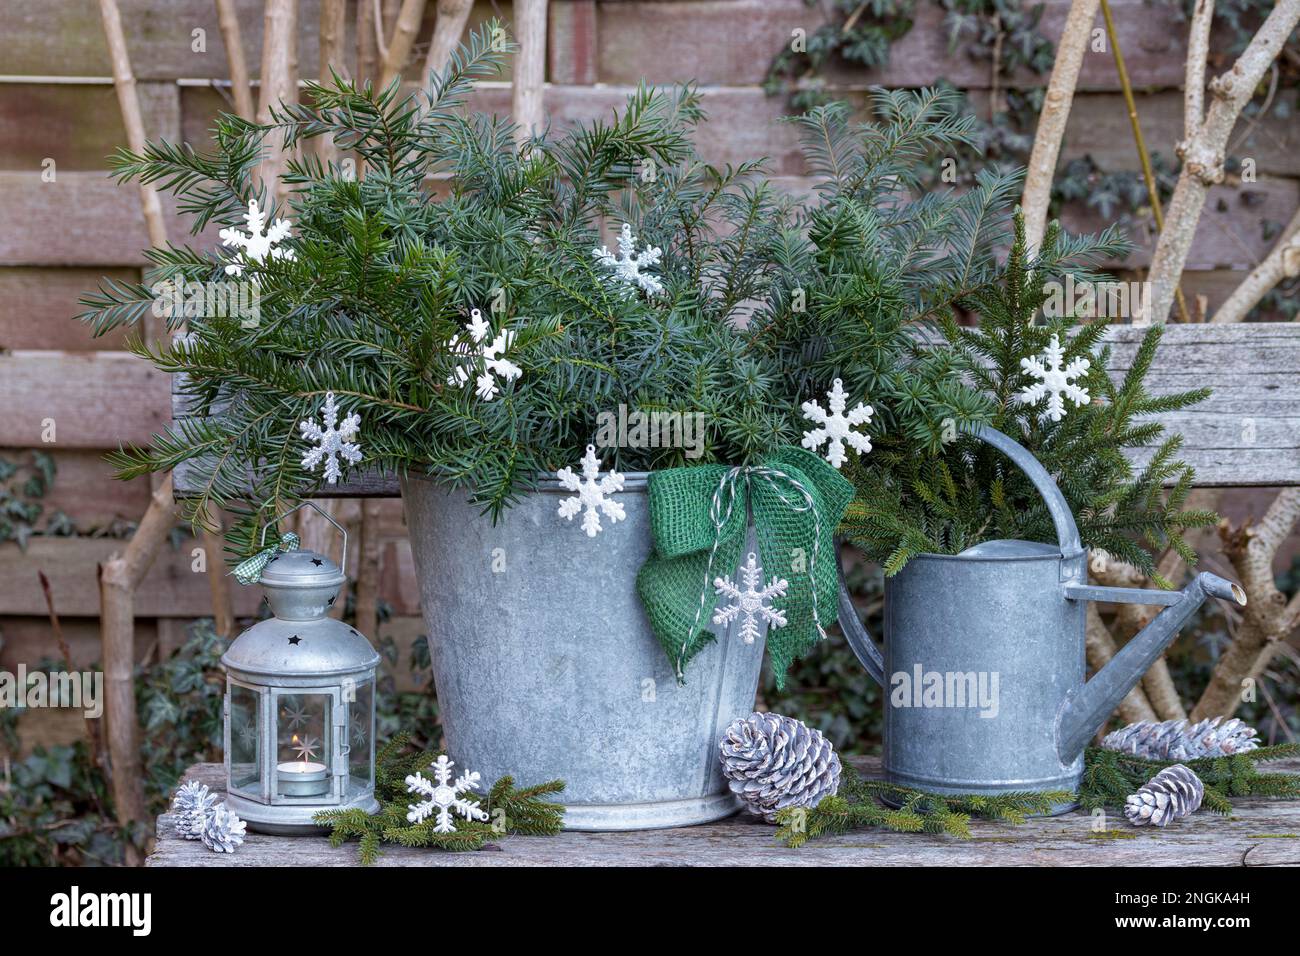 weihnachtsgartengestaltung mit Eibenzweigen in Zinkeimer, weihnachtsbaumschmuck und Laterne im Vintage-Stil Stockfoto